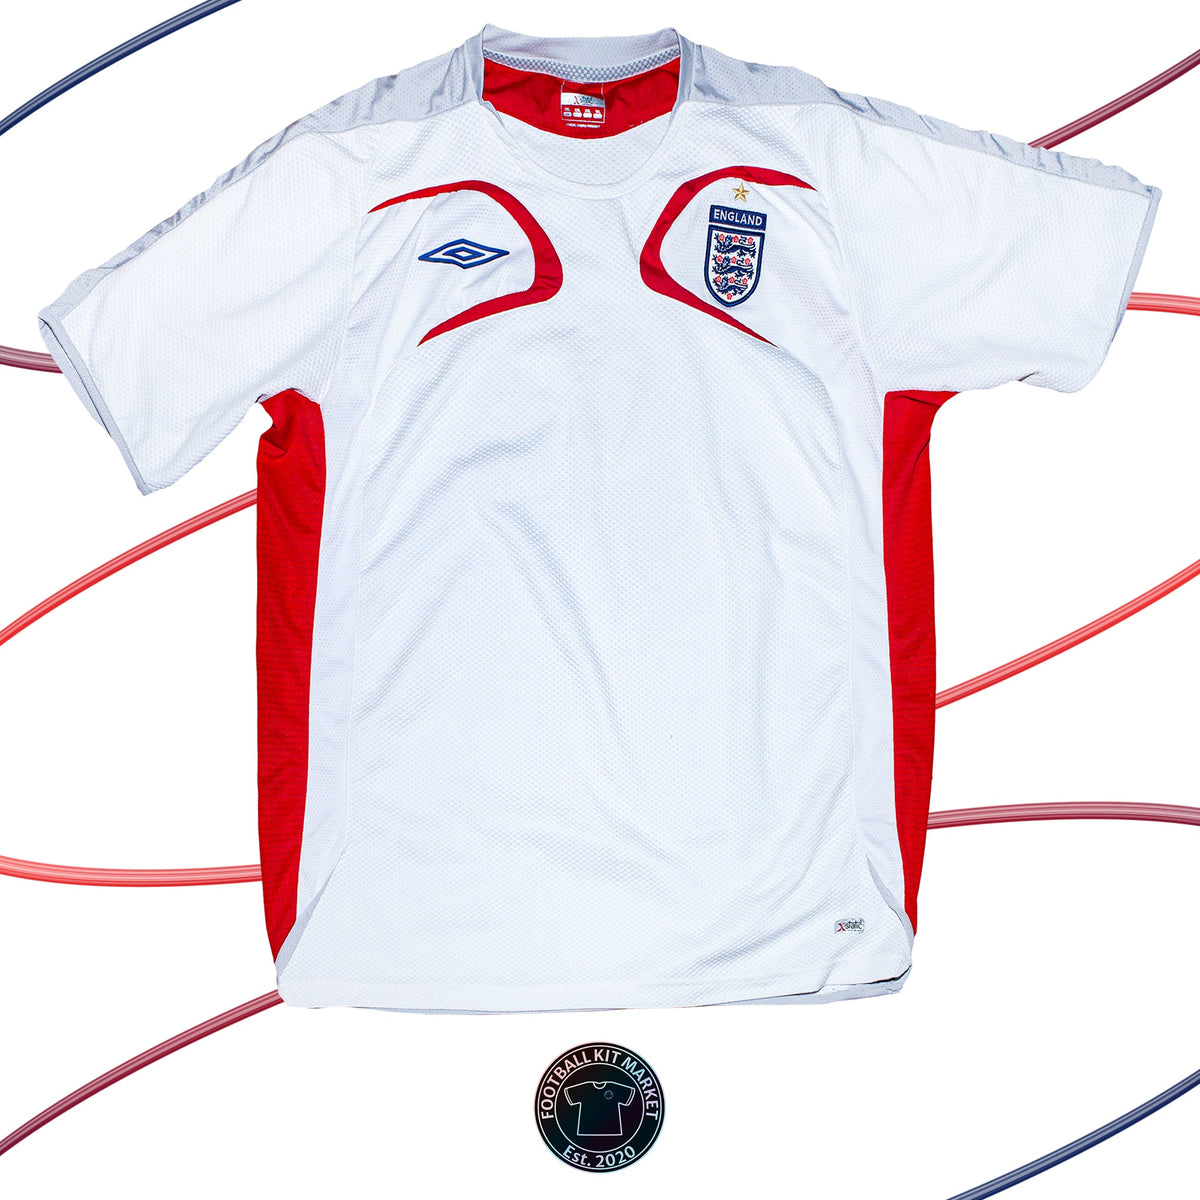 Genuine ENGLAND Training Shirt (2006) - UMBRO (XXL) - Product Image from Football Kit Market